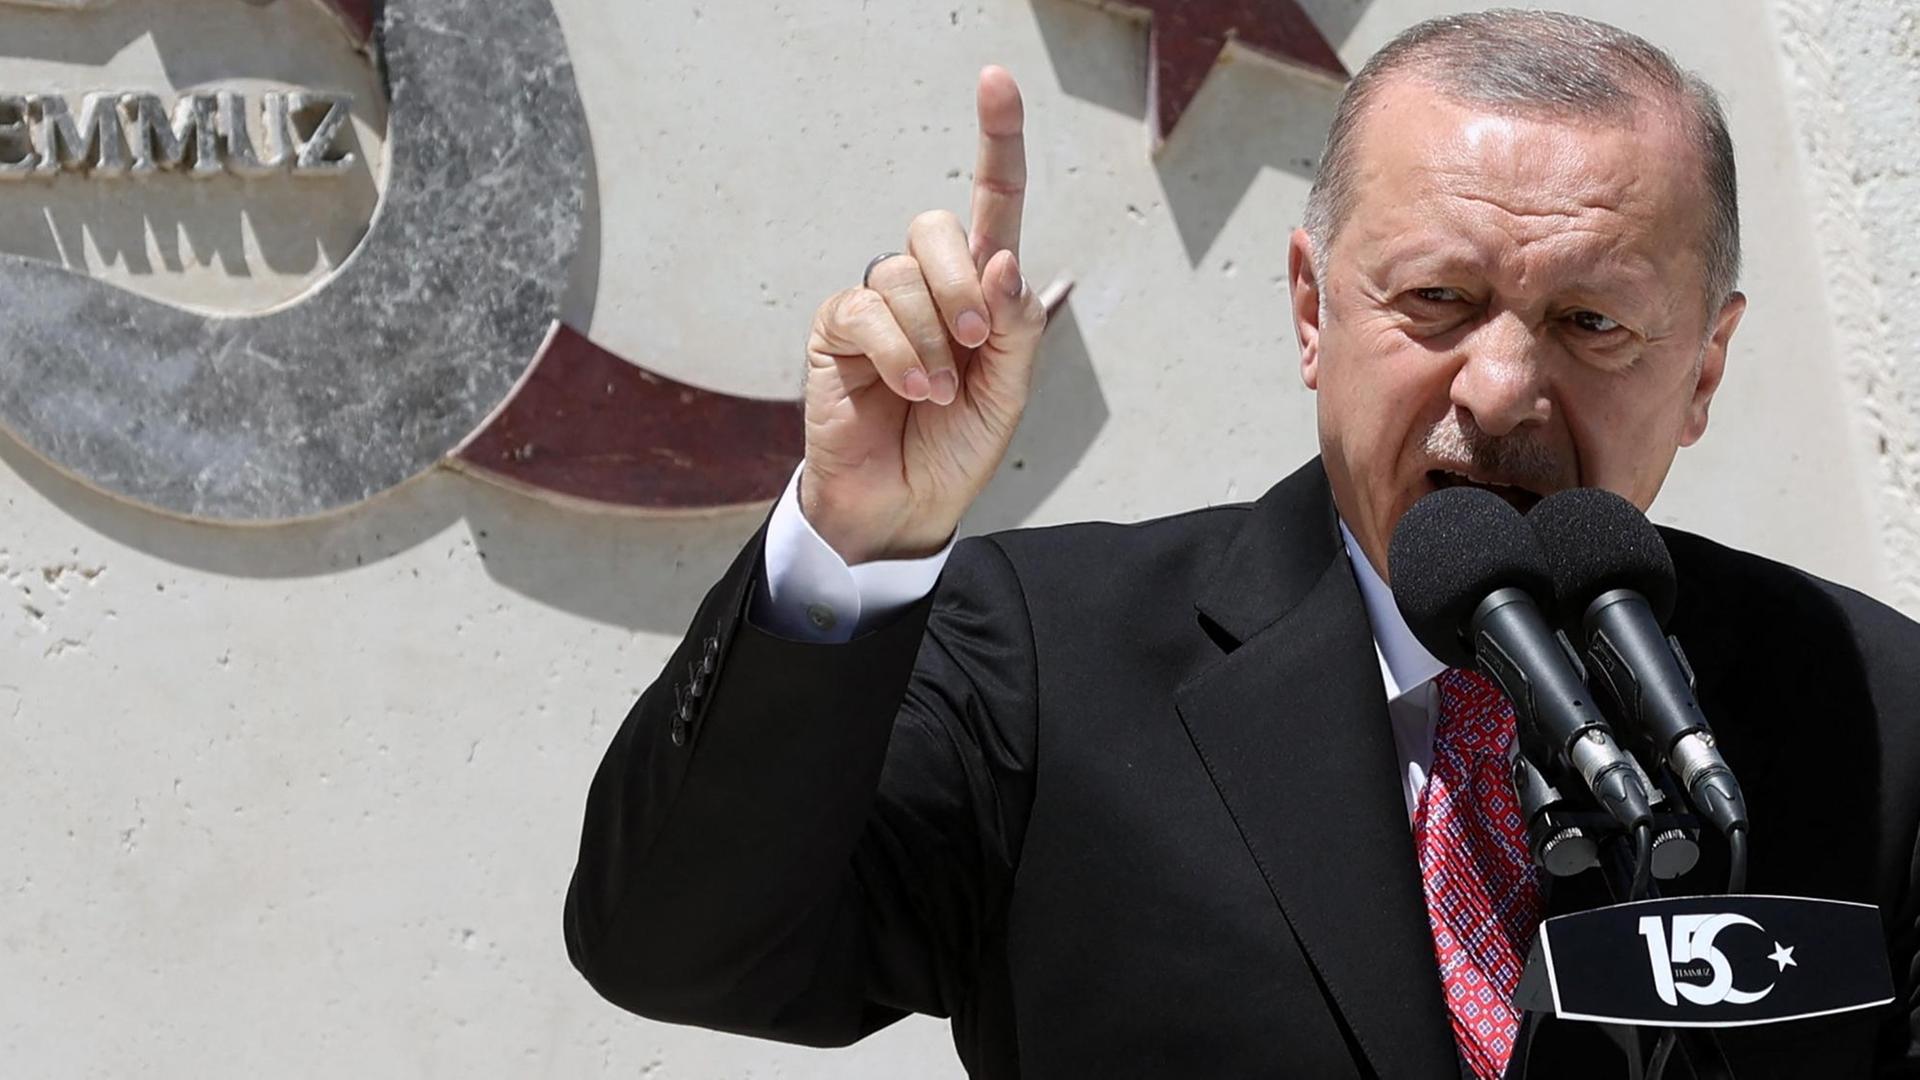 Der türkische Präsident Erdogan steht an einem Mikrofon und spricht aufgeregt.